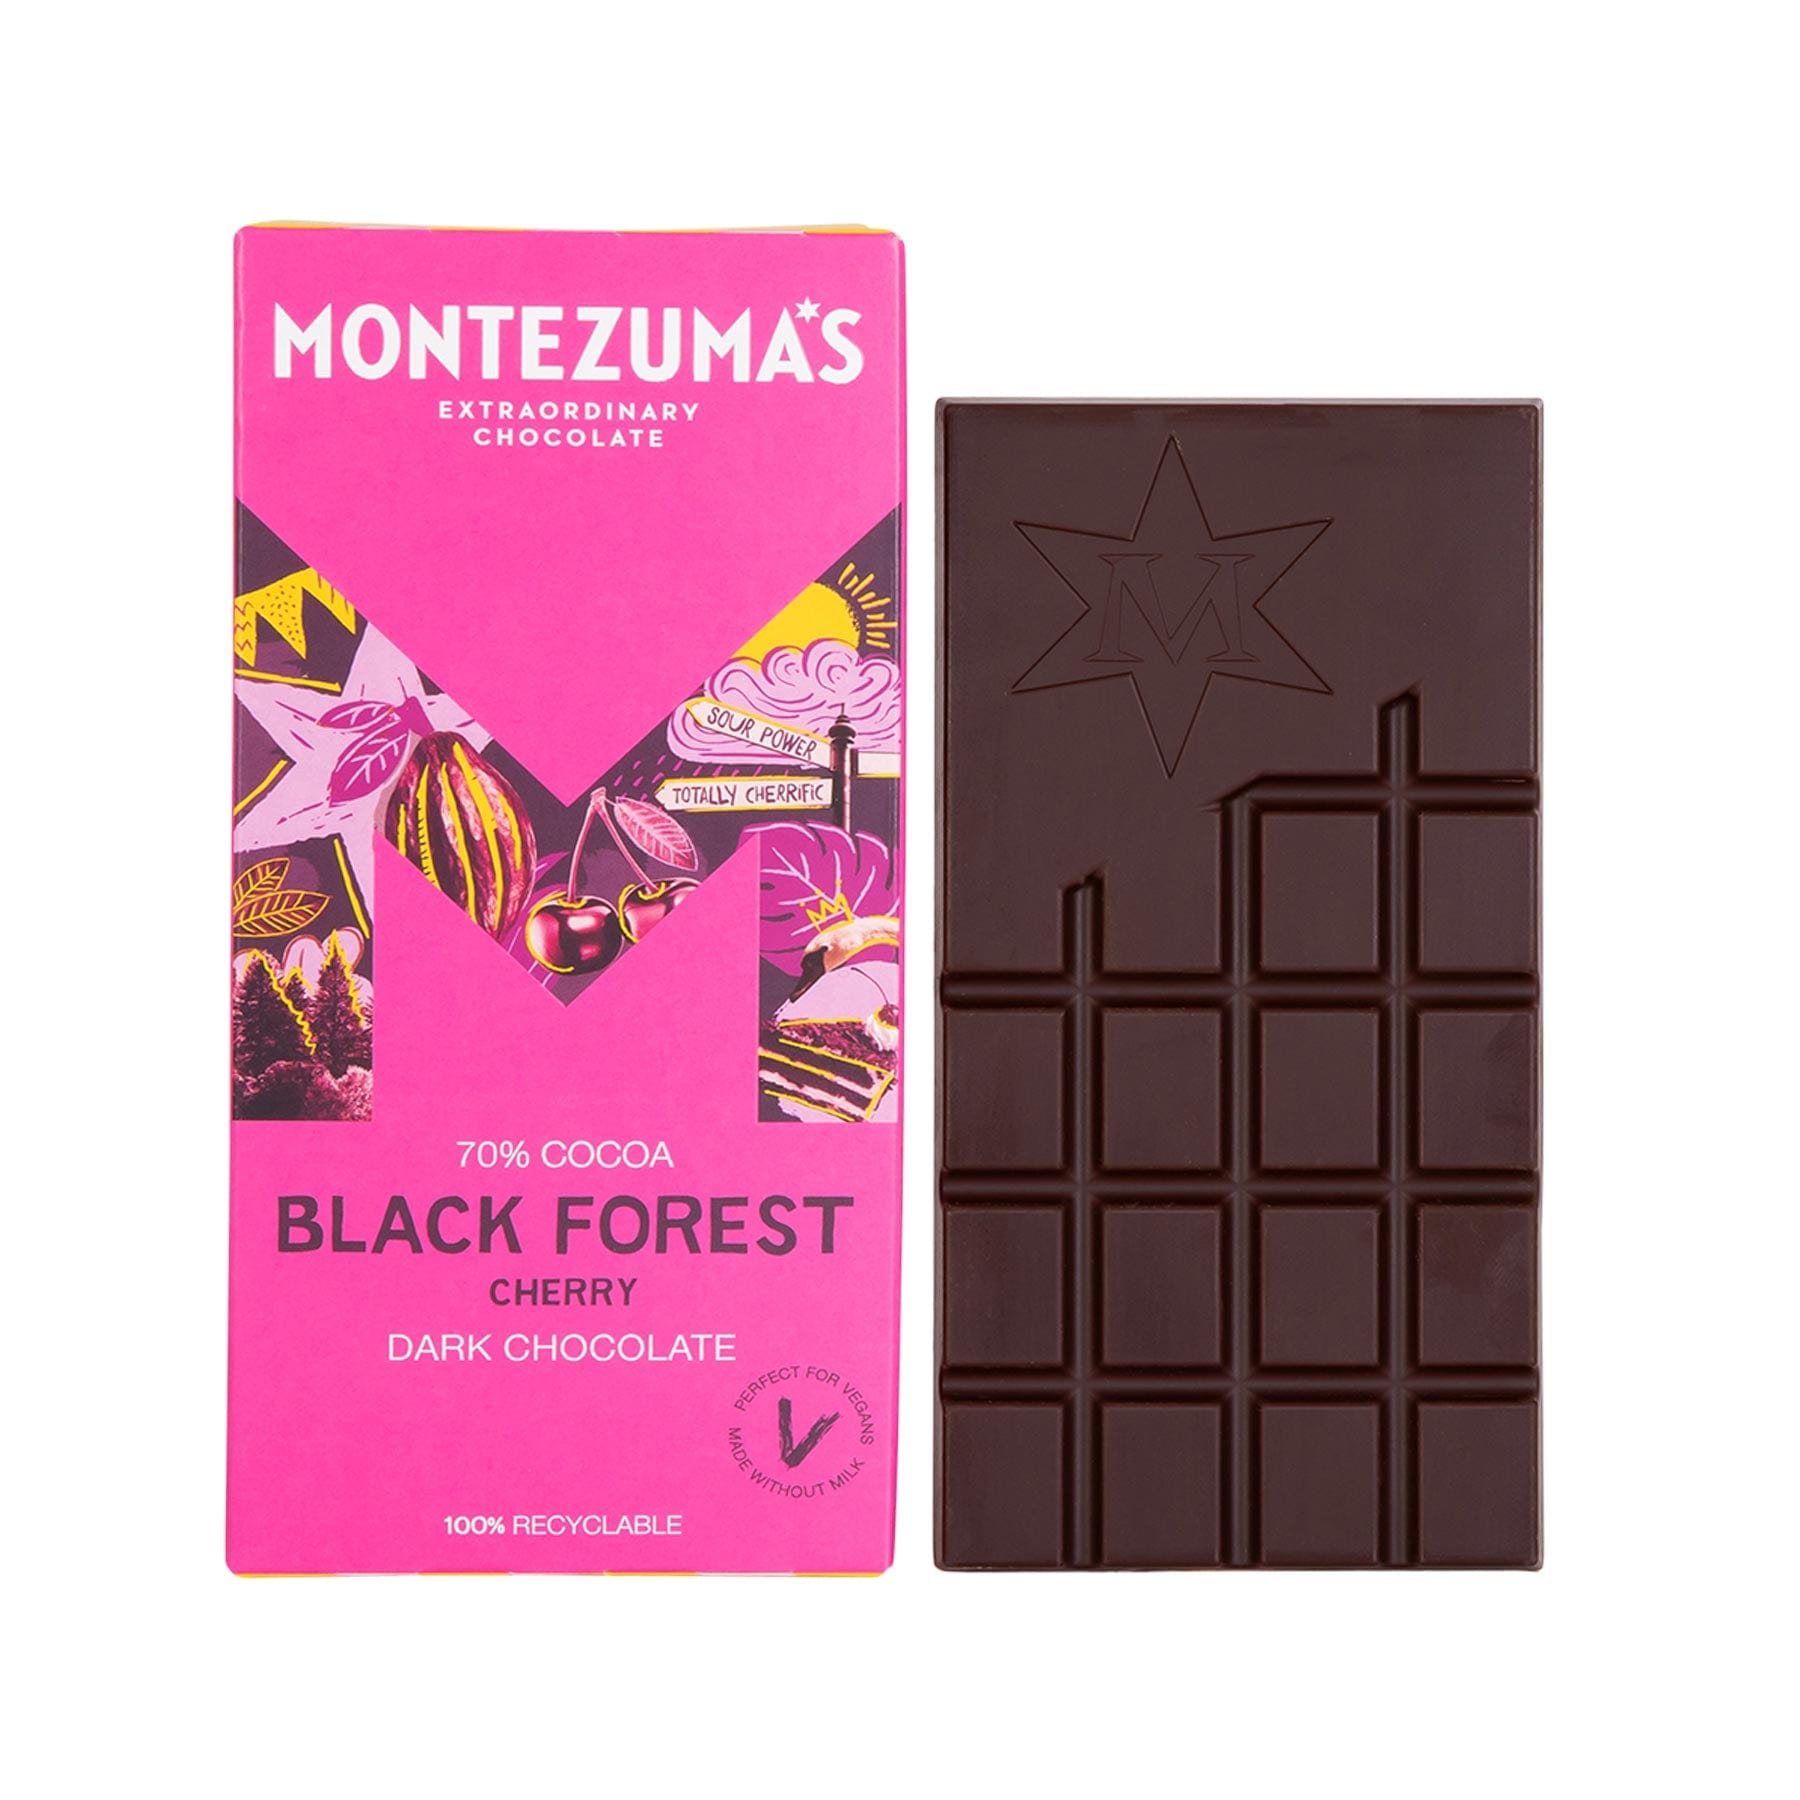 Black forest dark chocolate bar 90g